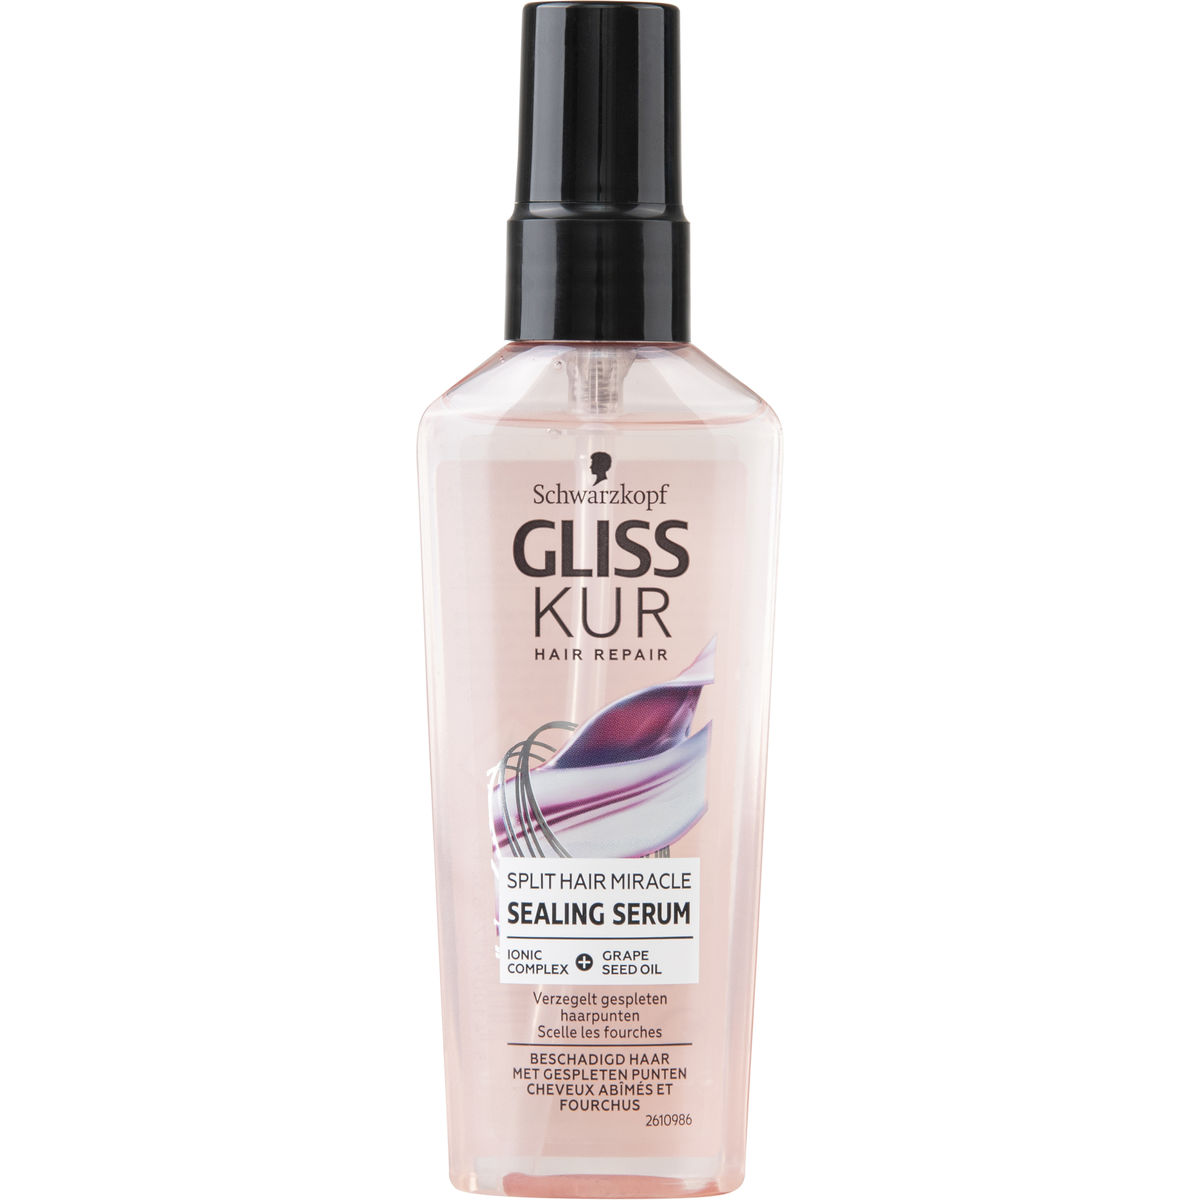 Gliss Kur Split Hair Miracle Sealing Serum 75 ml